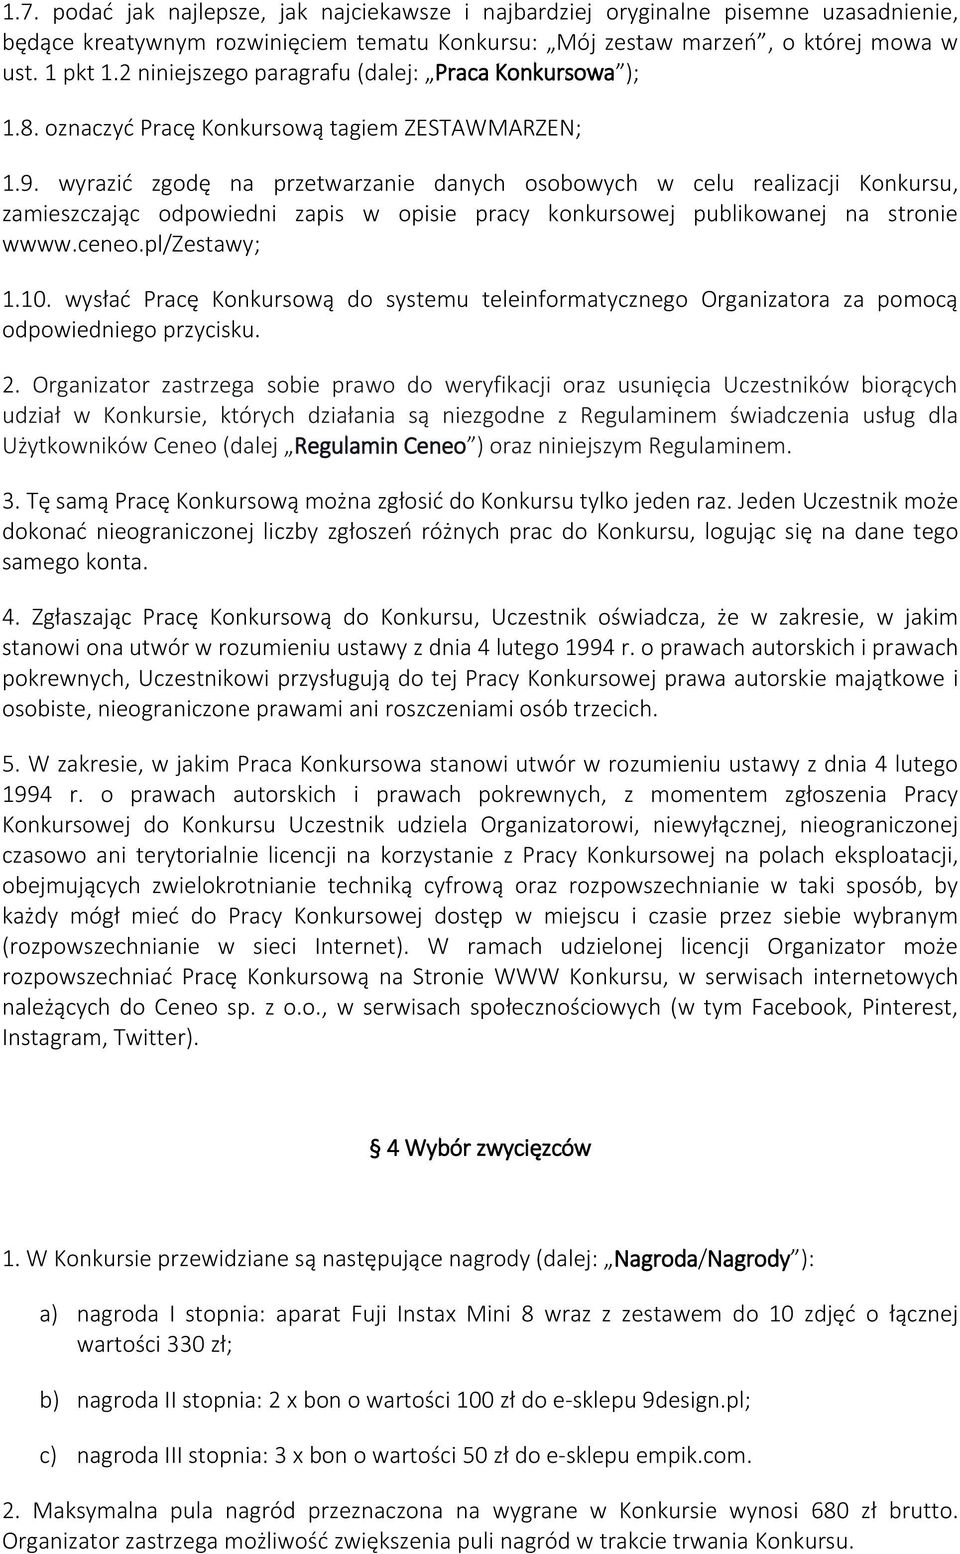 wyrazić zgodę na przetwarzanie danych osobowych w celu realizacji Konkursu, zamieszczając odpowiedni zapis w opisie pracy konkursowej publikowanej na stronie wwww.ceneo.pl/zestawy; 1.10.